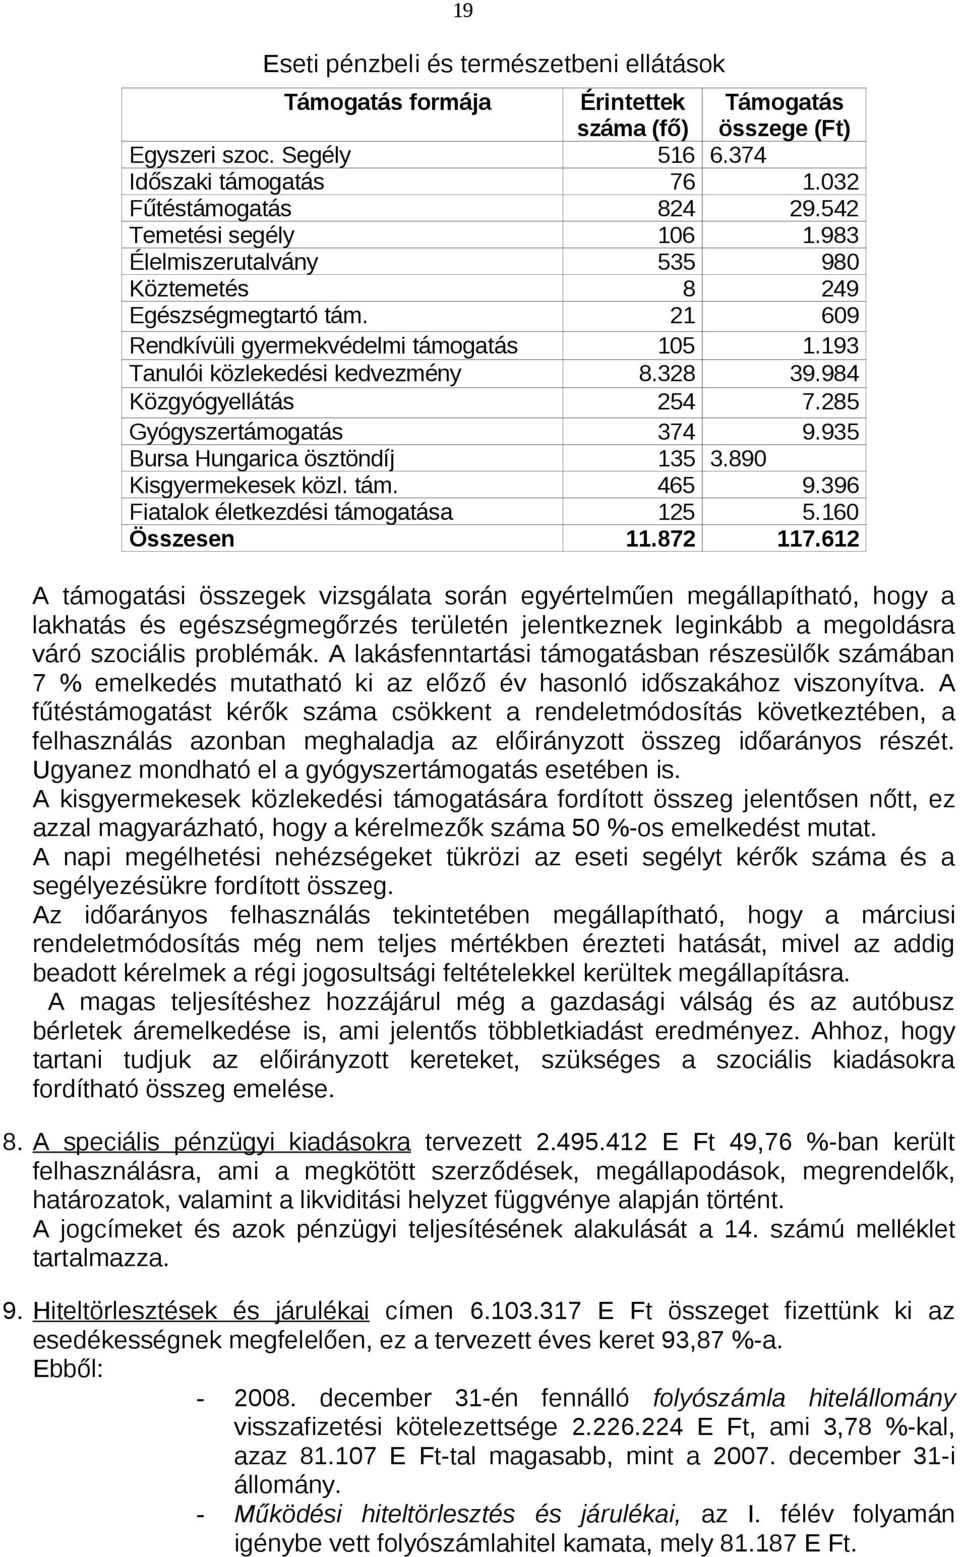 984 Közgyógyellátás 254 7.285 Gyógyszertámogatás 374 9.935 Bursa Hungarica ösztöndíj 135 3.890 Kisgyermekesek közl. tám. 465 9.396 Fiatalok életkezdési támogatása 125 5.160 Összesen 11.872 117.